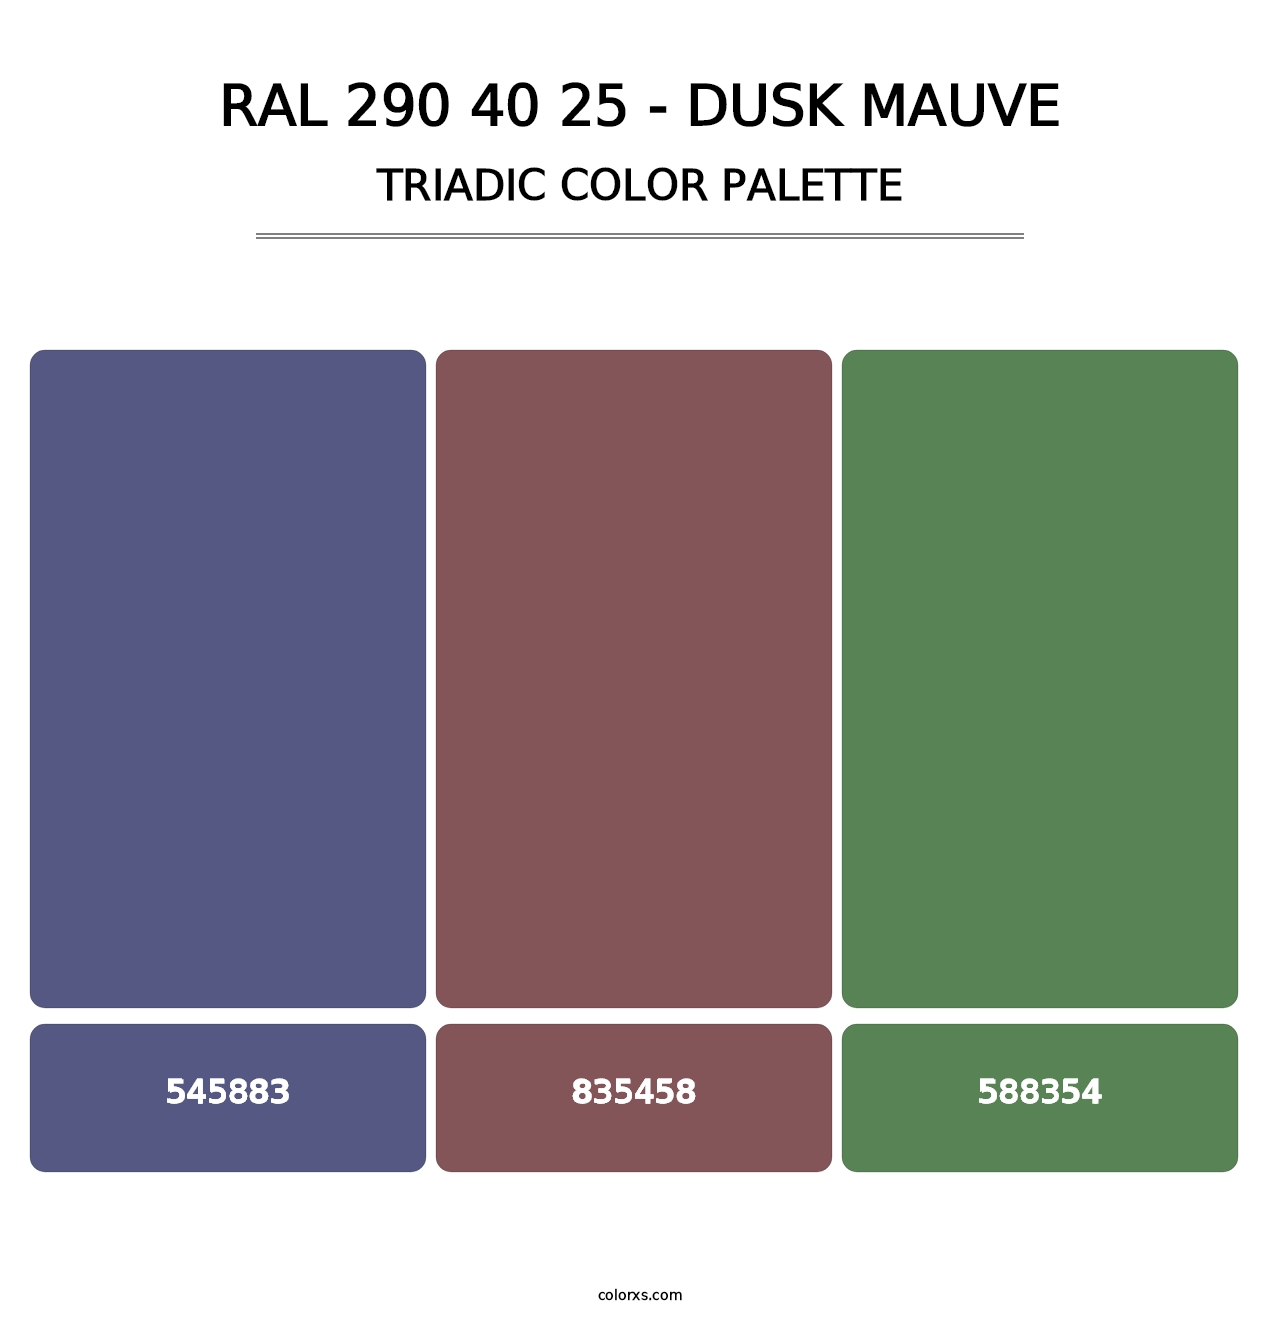 RAL 290 40 25 - Dusk Mauve - Triadic Color Palette